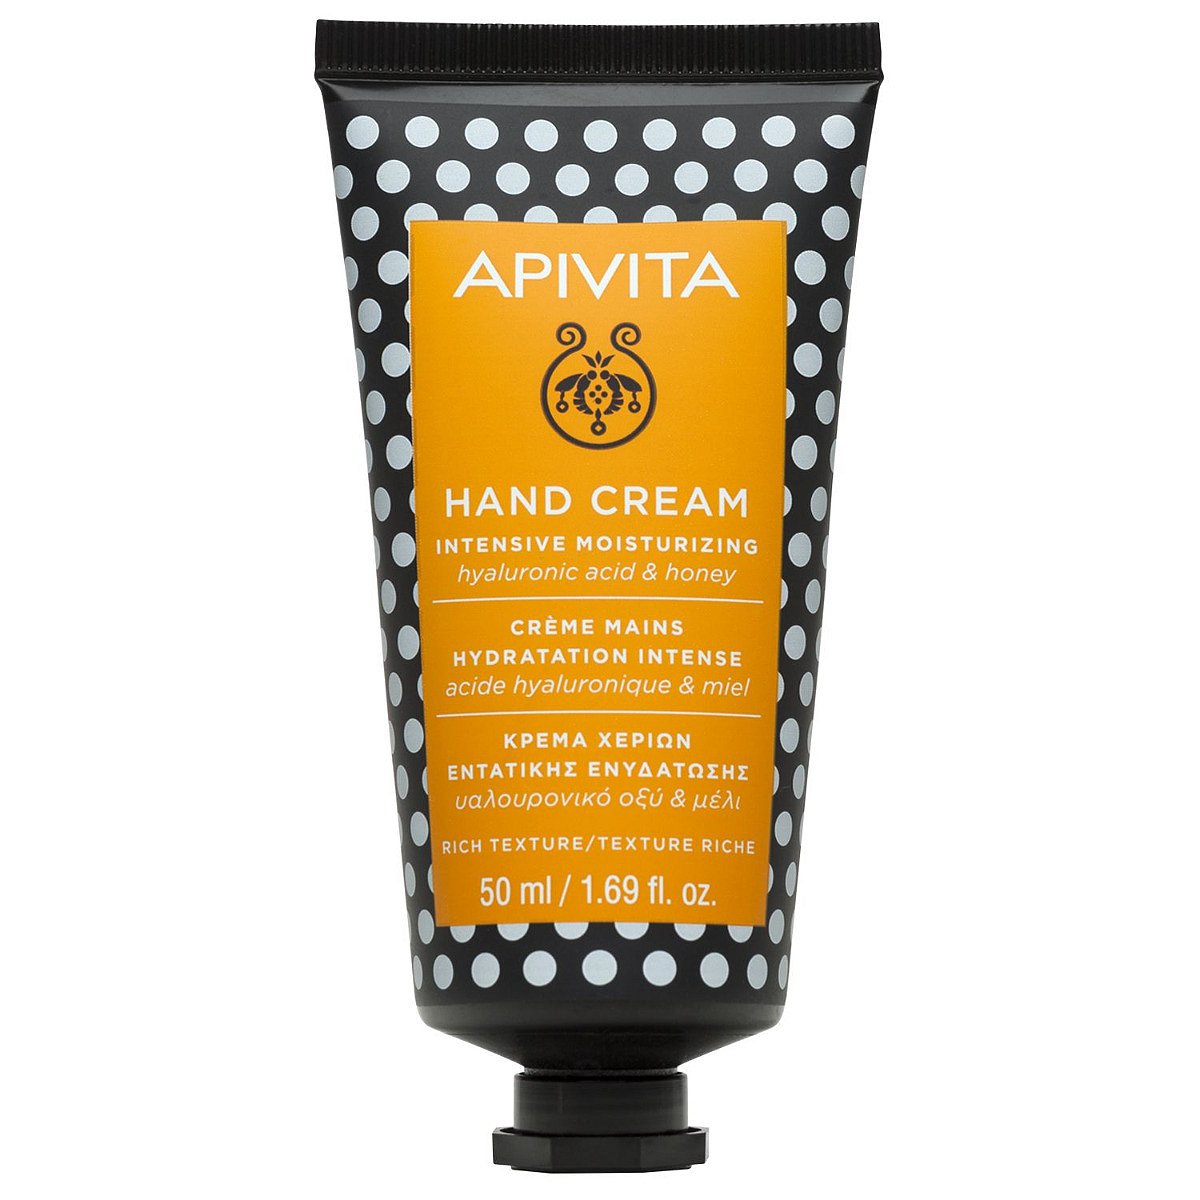 APIVITA Hand Cream Intensive Moisturizing intenzivně hydratující krém na ruce 50 ml